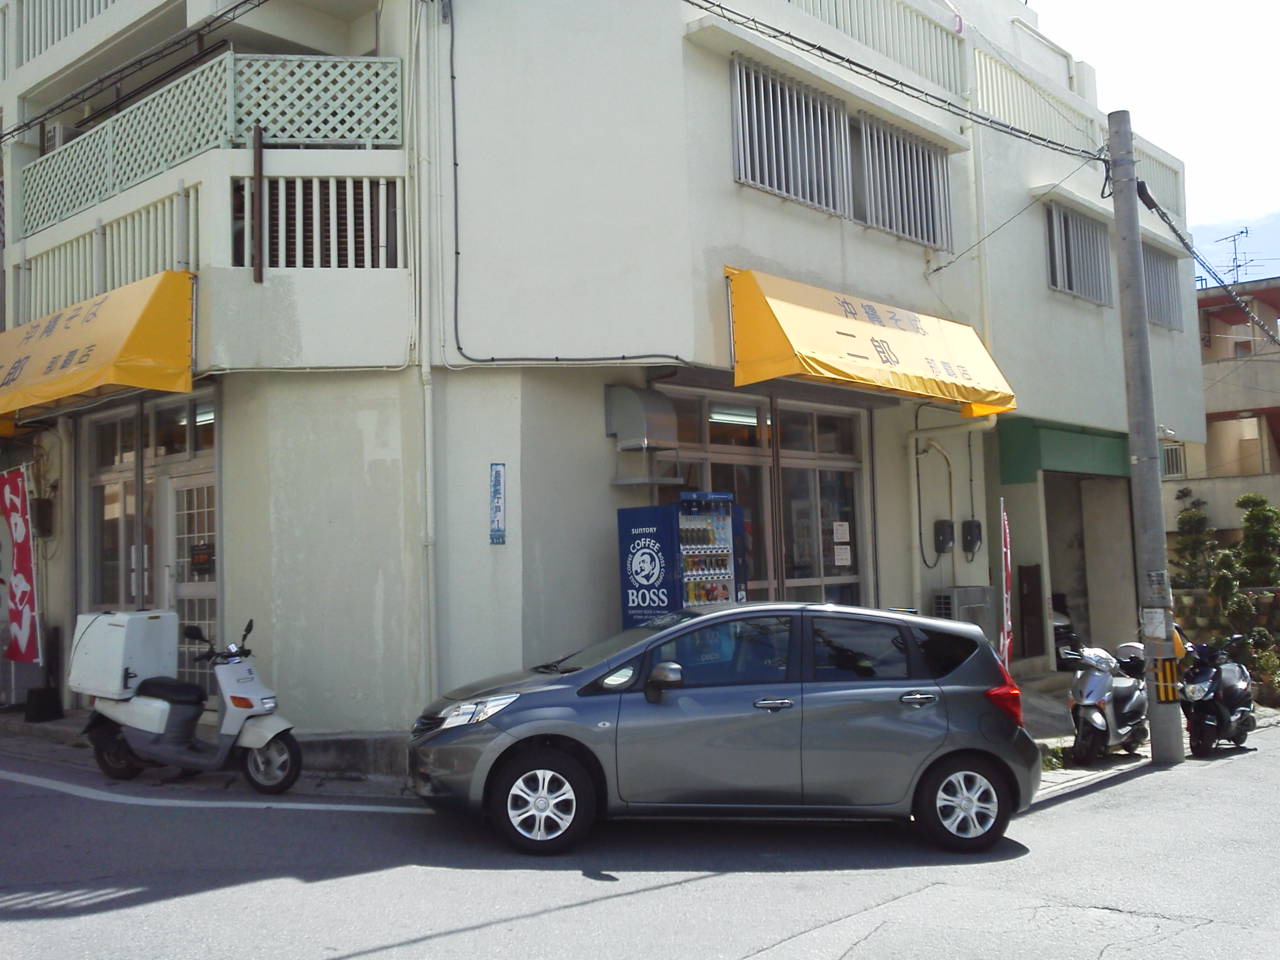 ラーメン二郎新橋店元助手の方が開店されたという噂のお店。 出入口